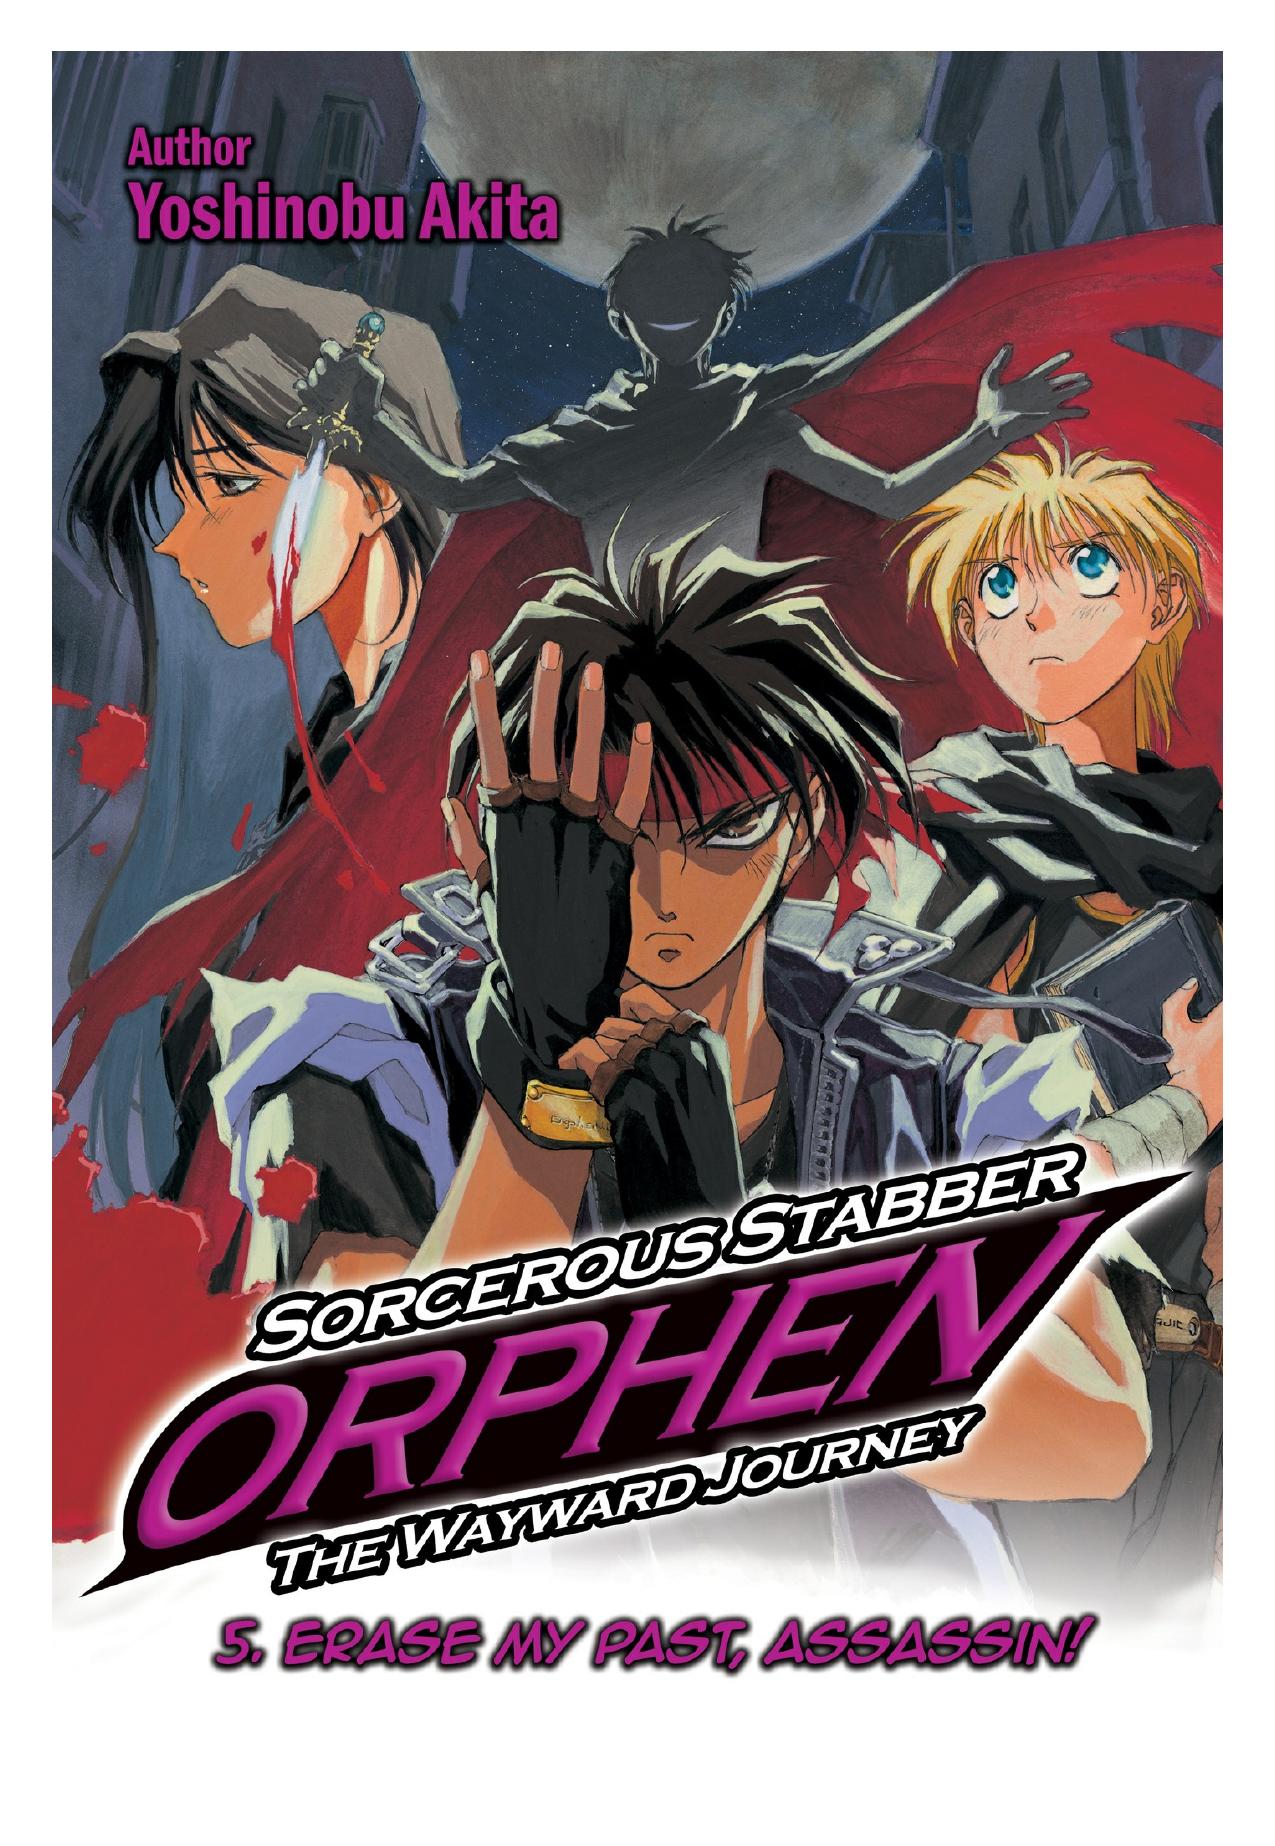 Sorcerous Stabber Orphen: The Wayward Journey Volume 5 by Yoshinobu Akita